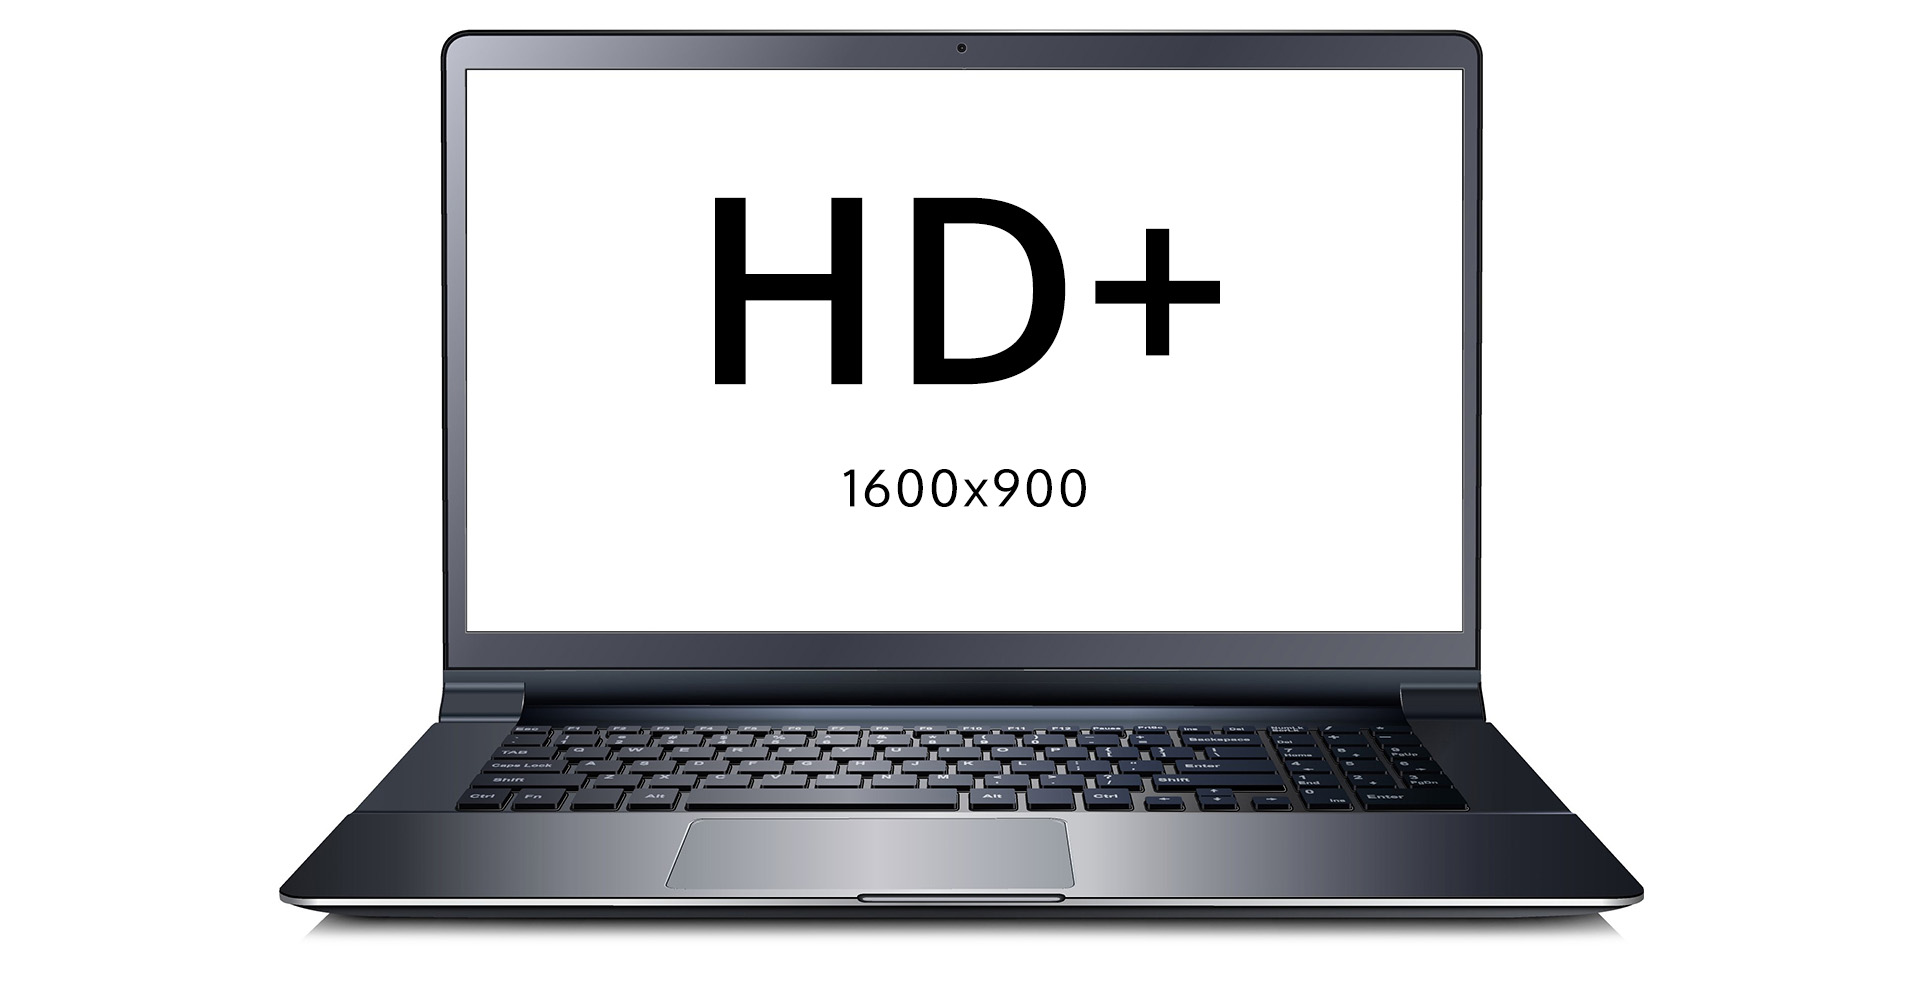 MSI 11UD-633XPL HD+ 1600x900 raiška